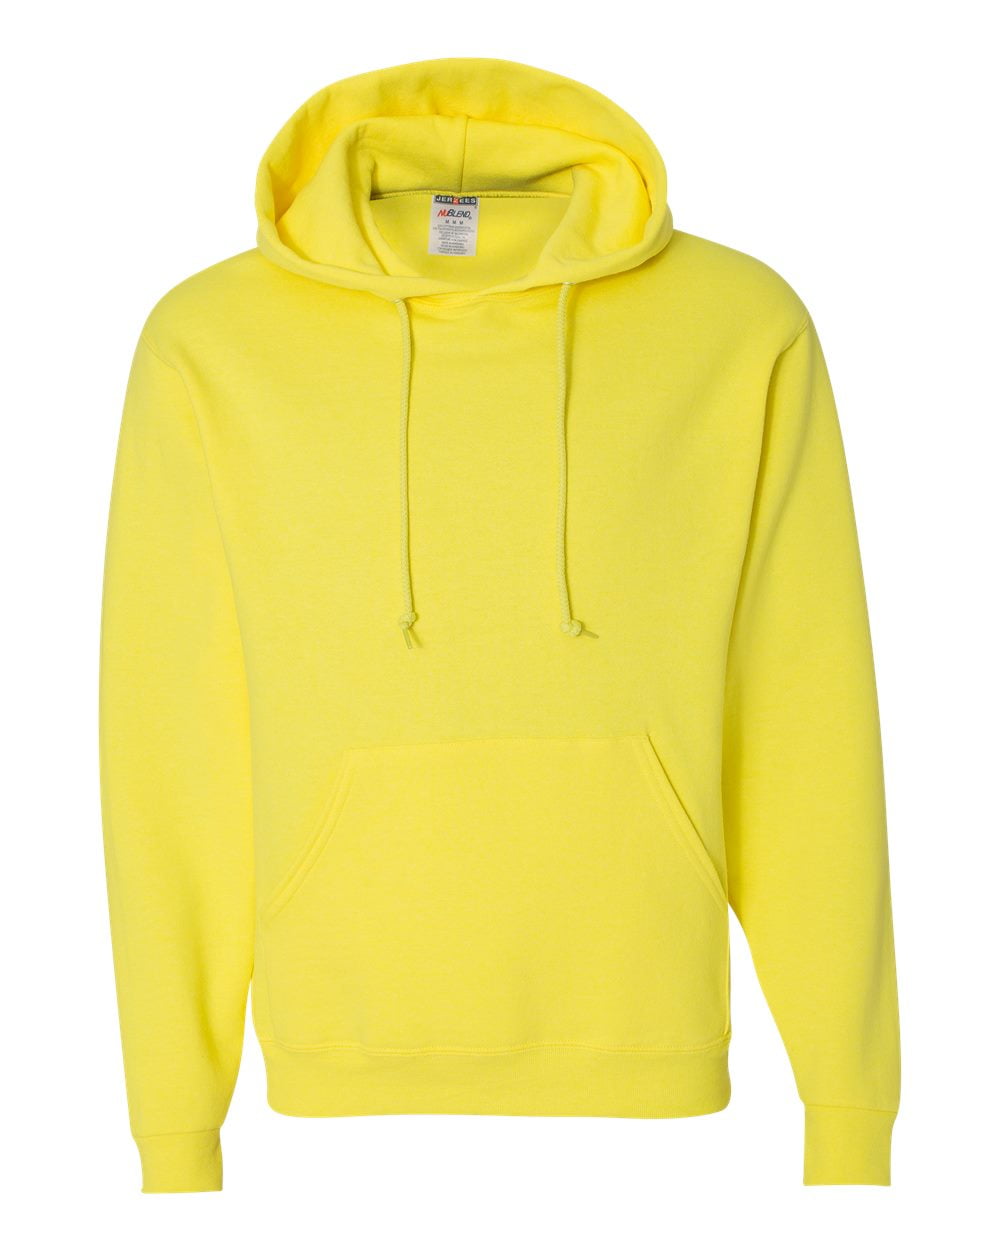 7 JerZees NuBlend Hooded Sweatshirt Bulk Wholesale Hoodie ok to mix S-XL Colors